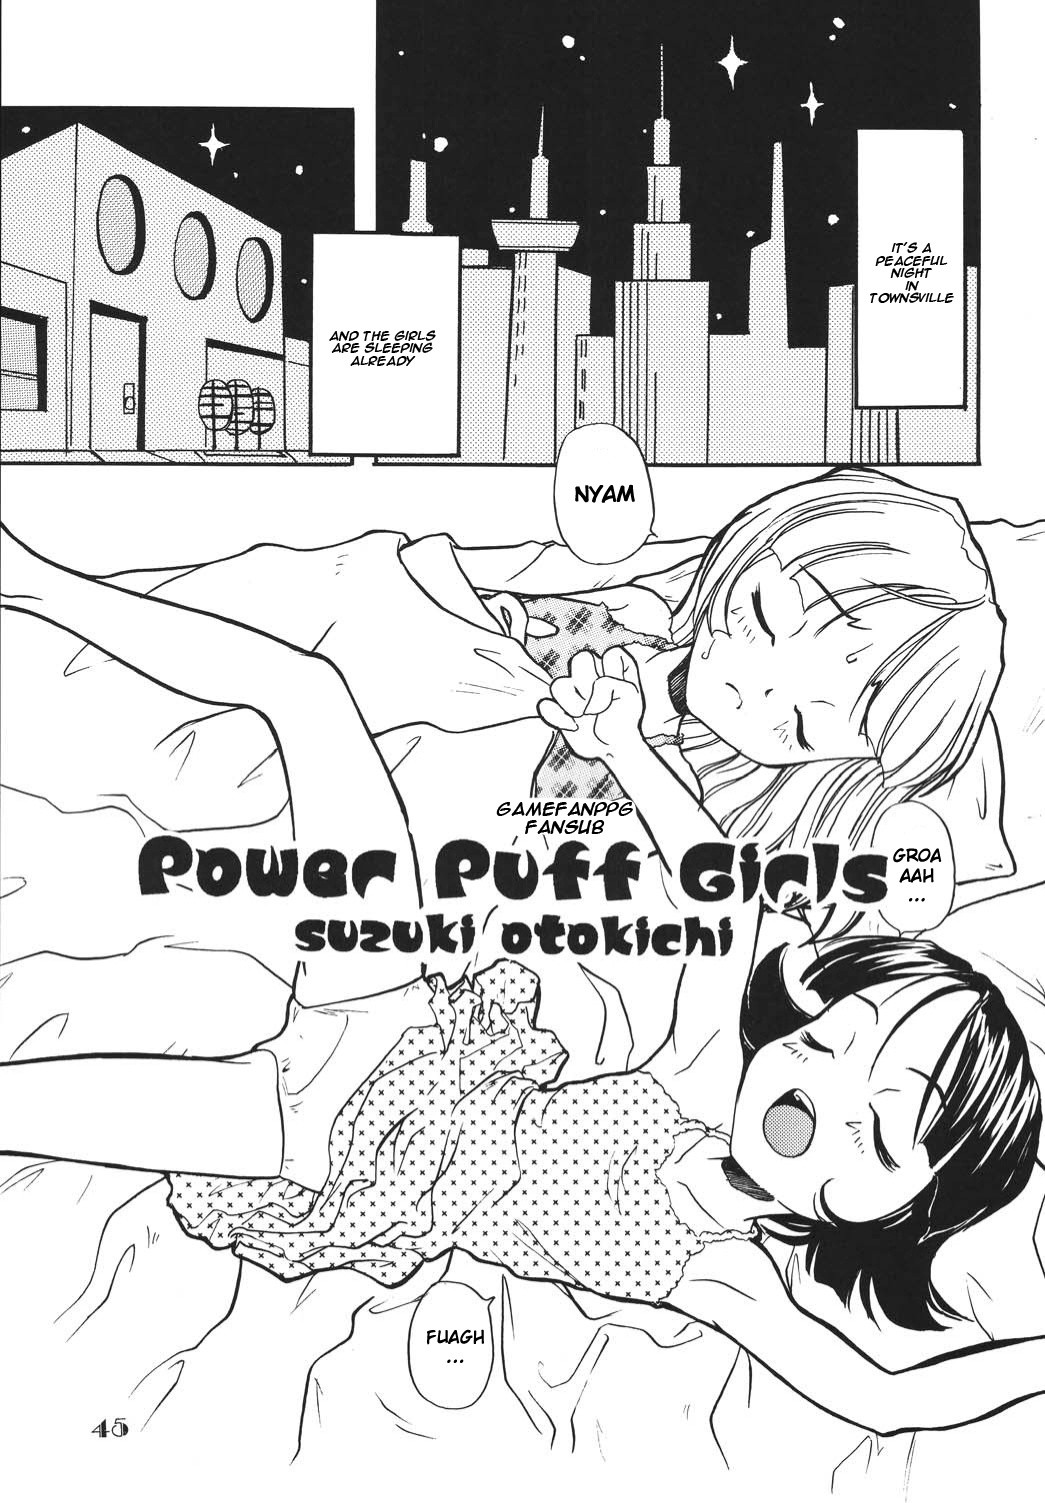 Night hentai manga picture 1